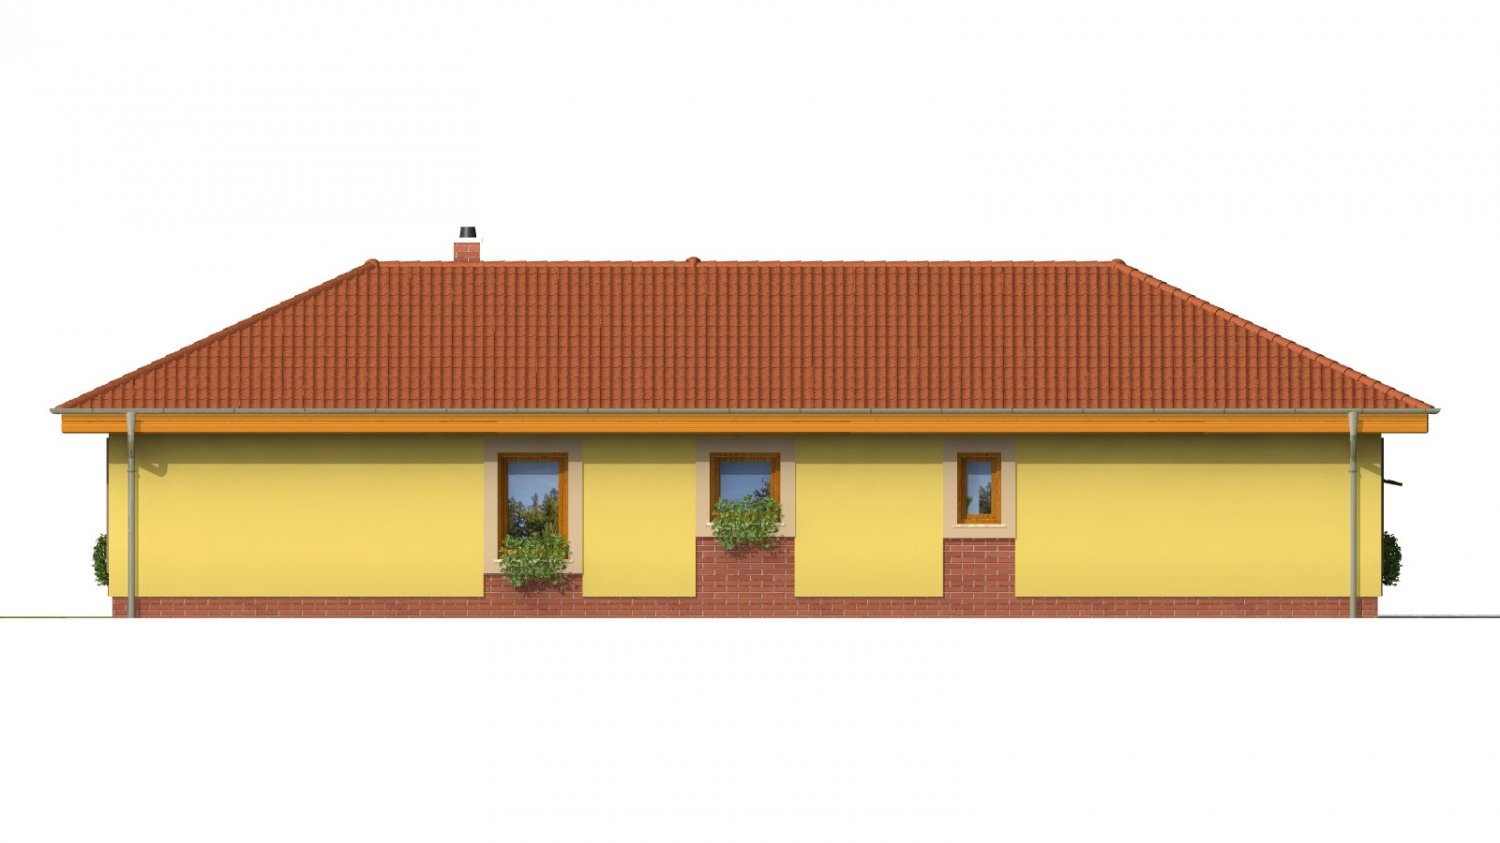 Pohľad 3. - Projekt domu na úzký a dlouhý pozemek s garáží.